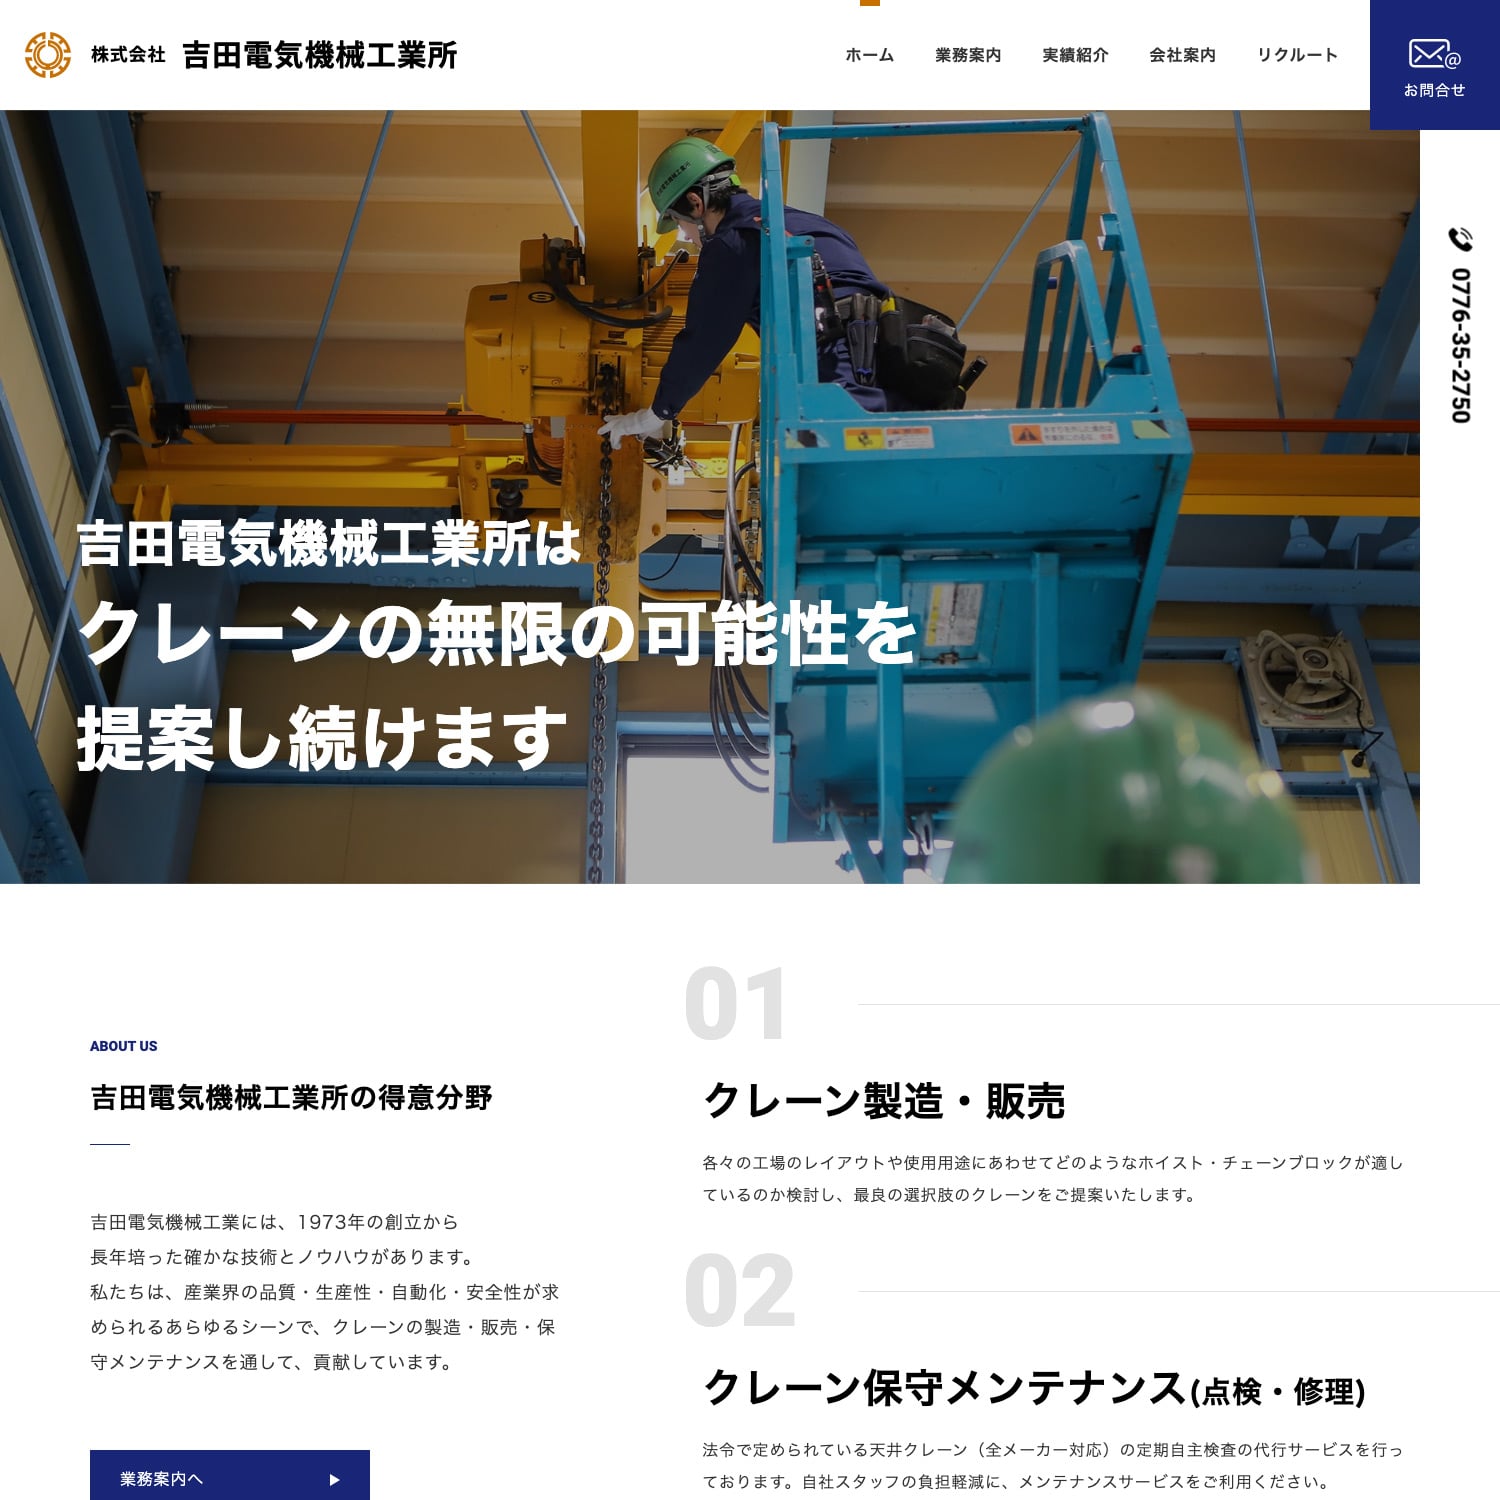 株式会社吉田電気機械工業所 Webサイト公開